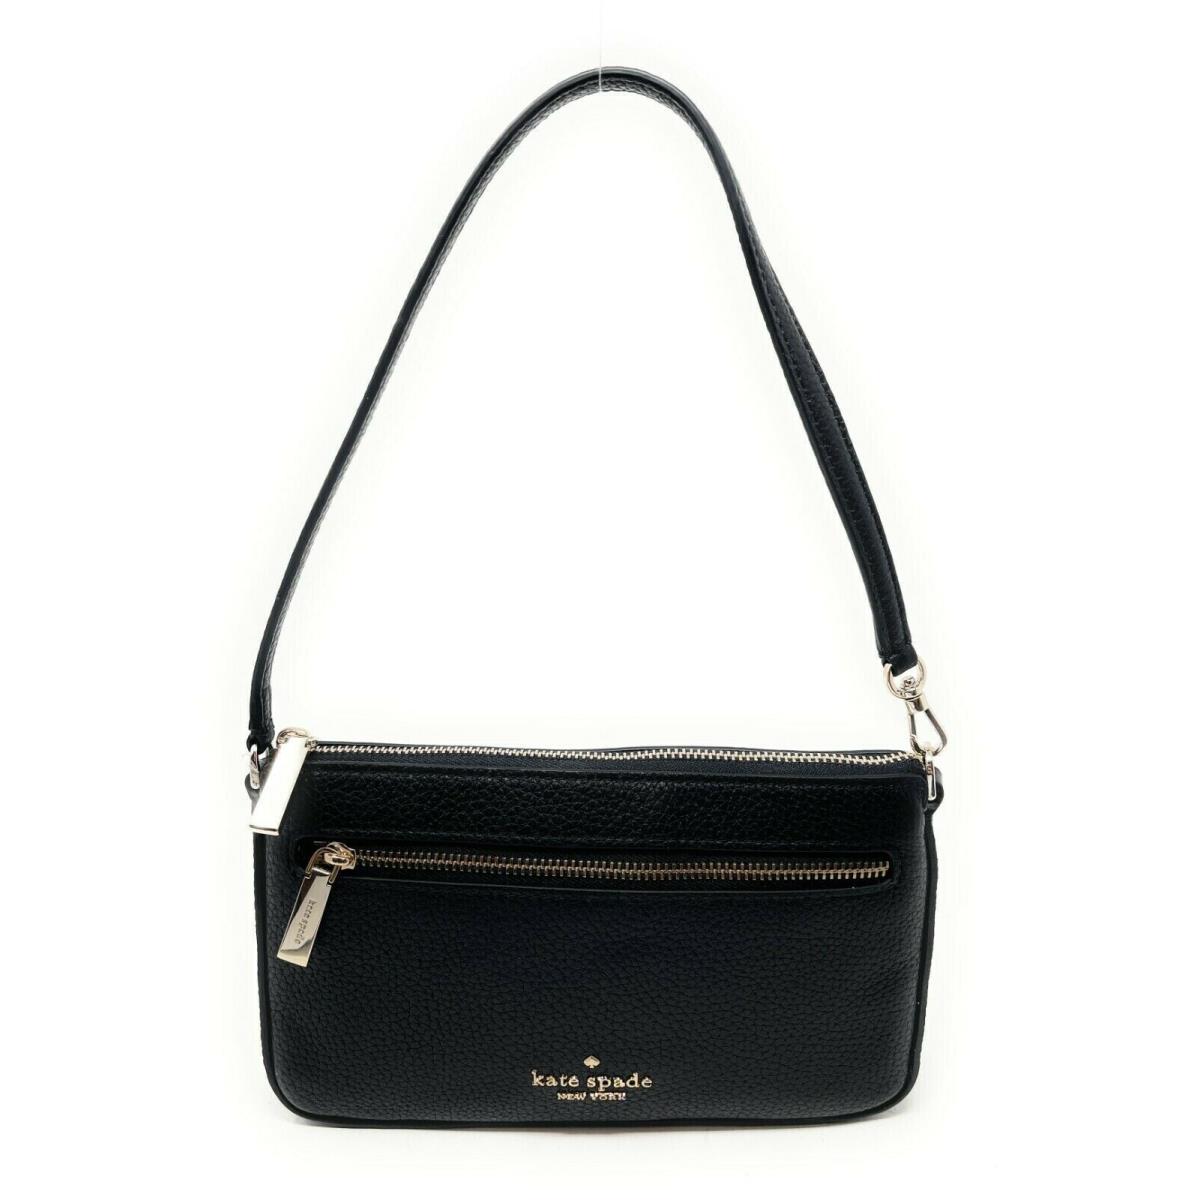 Kate Spade Leila Convertible Wristlet Shoulder Bag Leather Black K6088 - Handle/Strap: Black, Exterior: Black